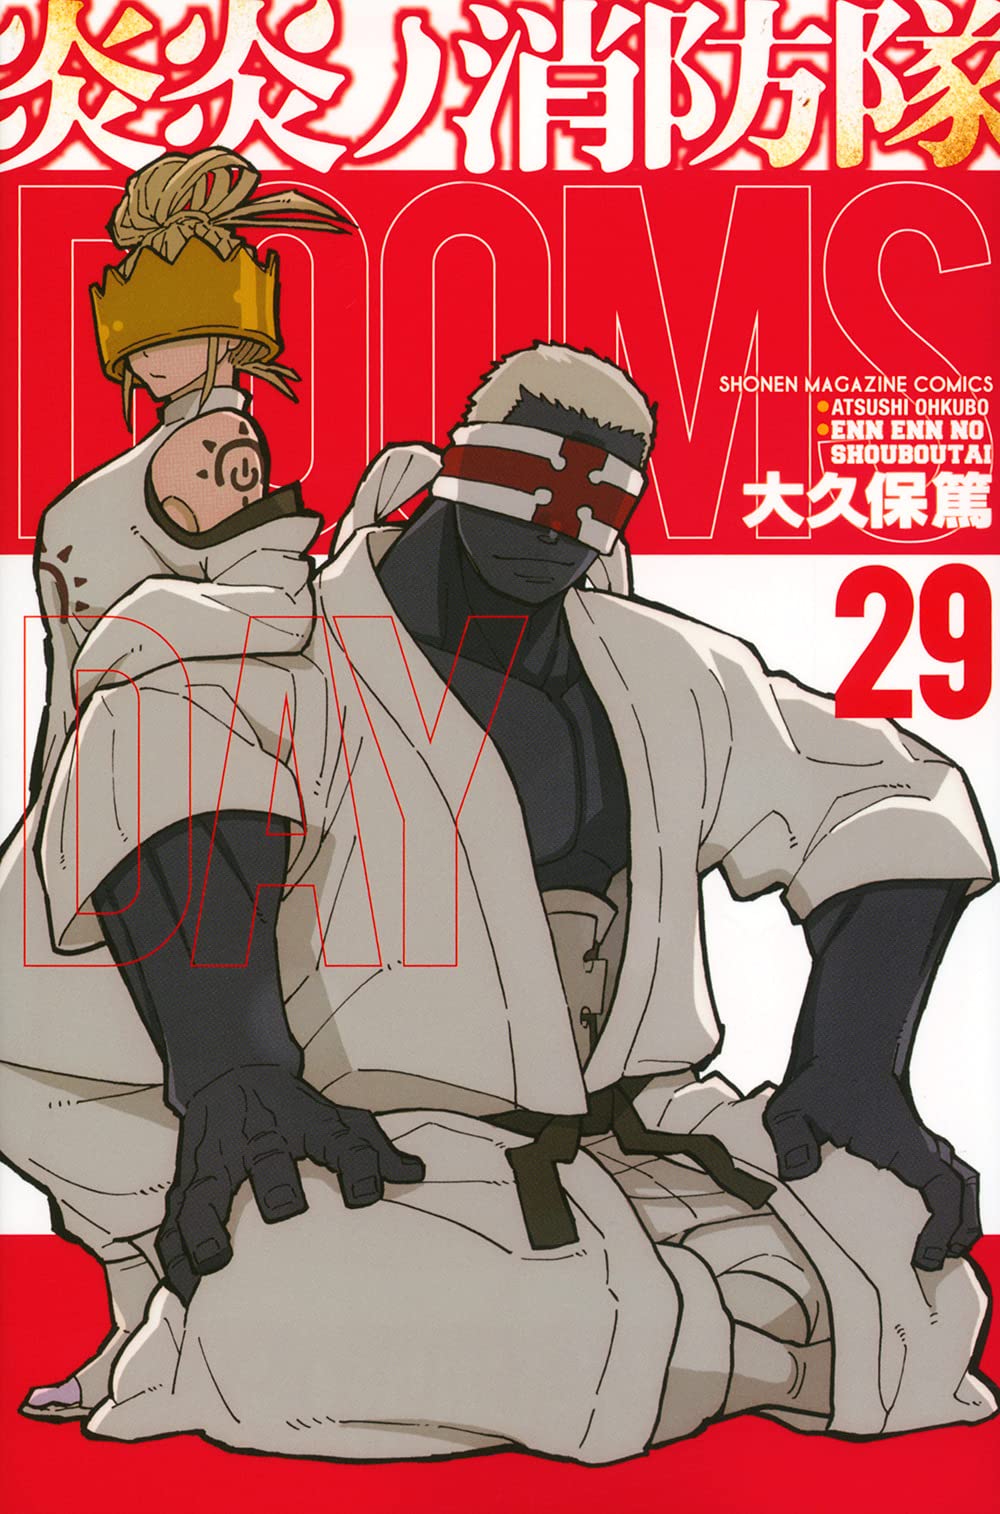 Fire Force Volume 11 (Enen no Shouboutai) - Manga Store 